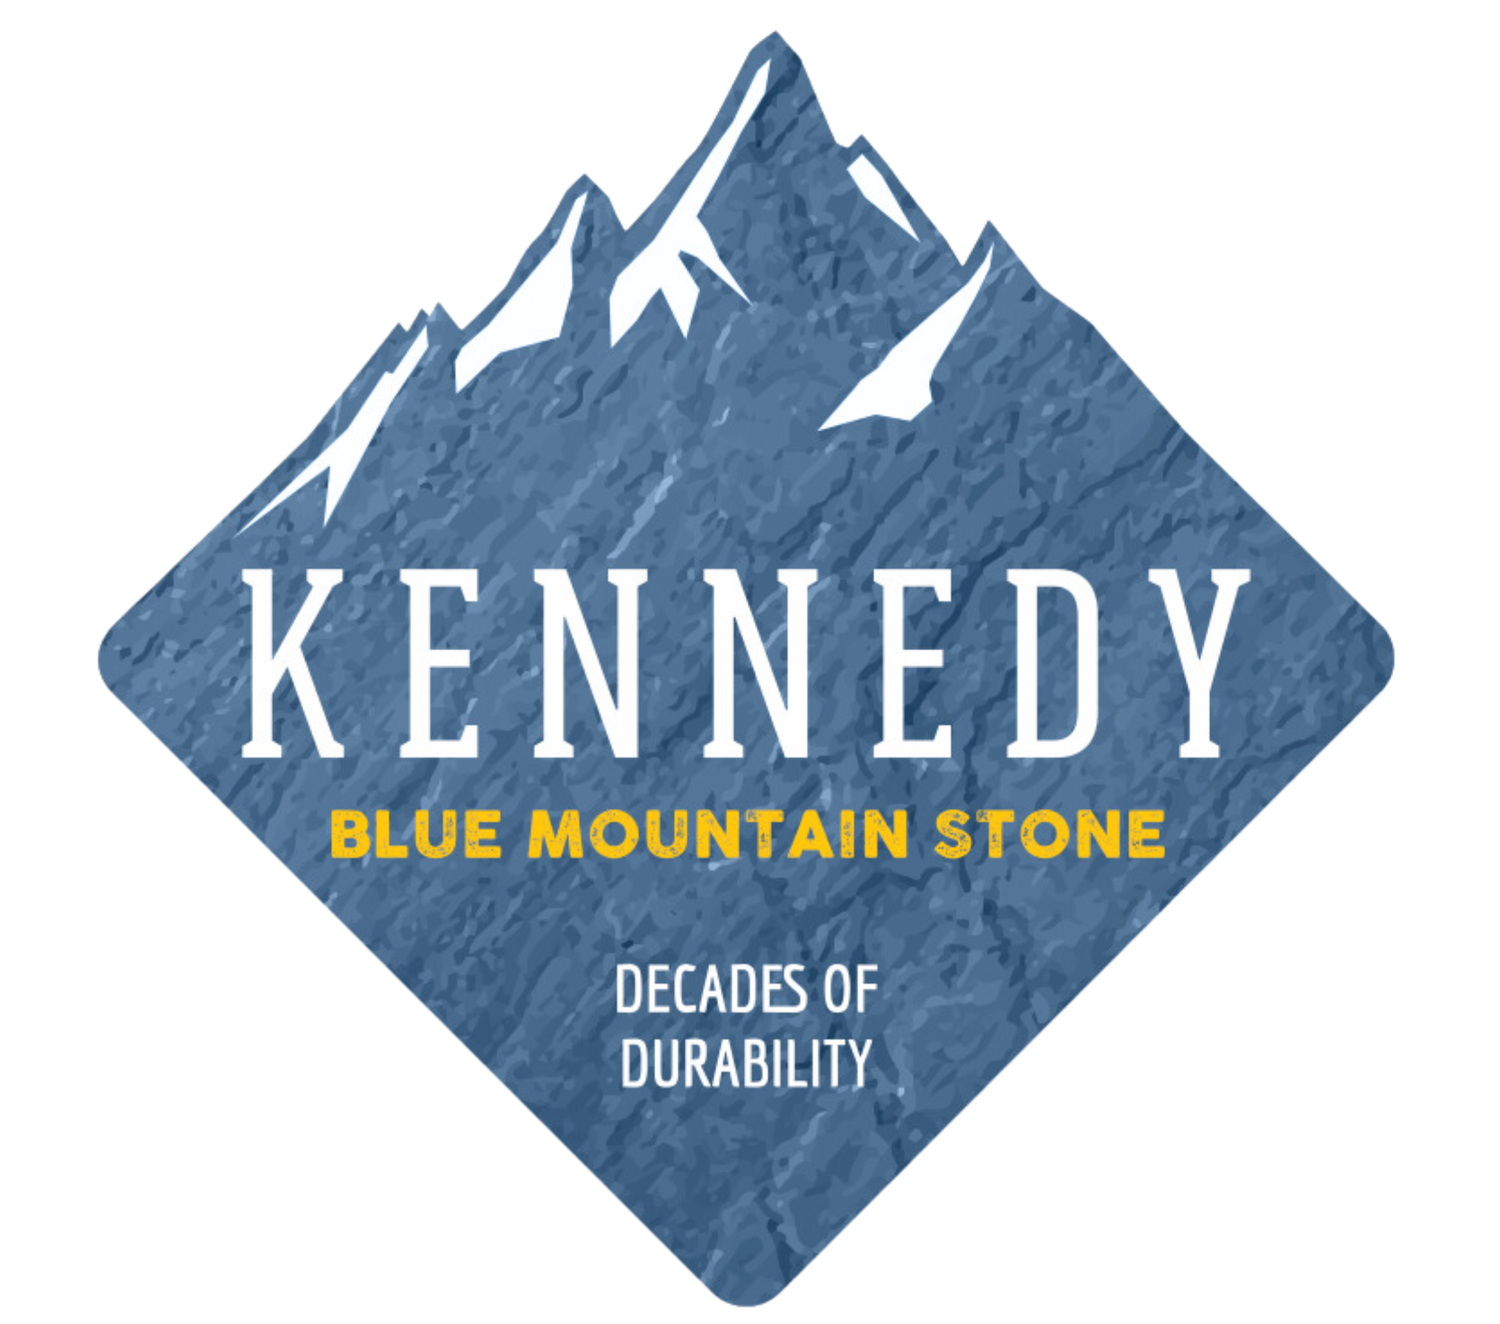 Kennedy Blue Mountain Stone